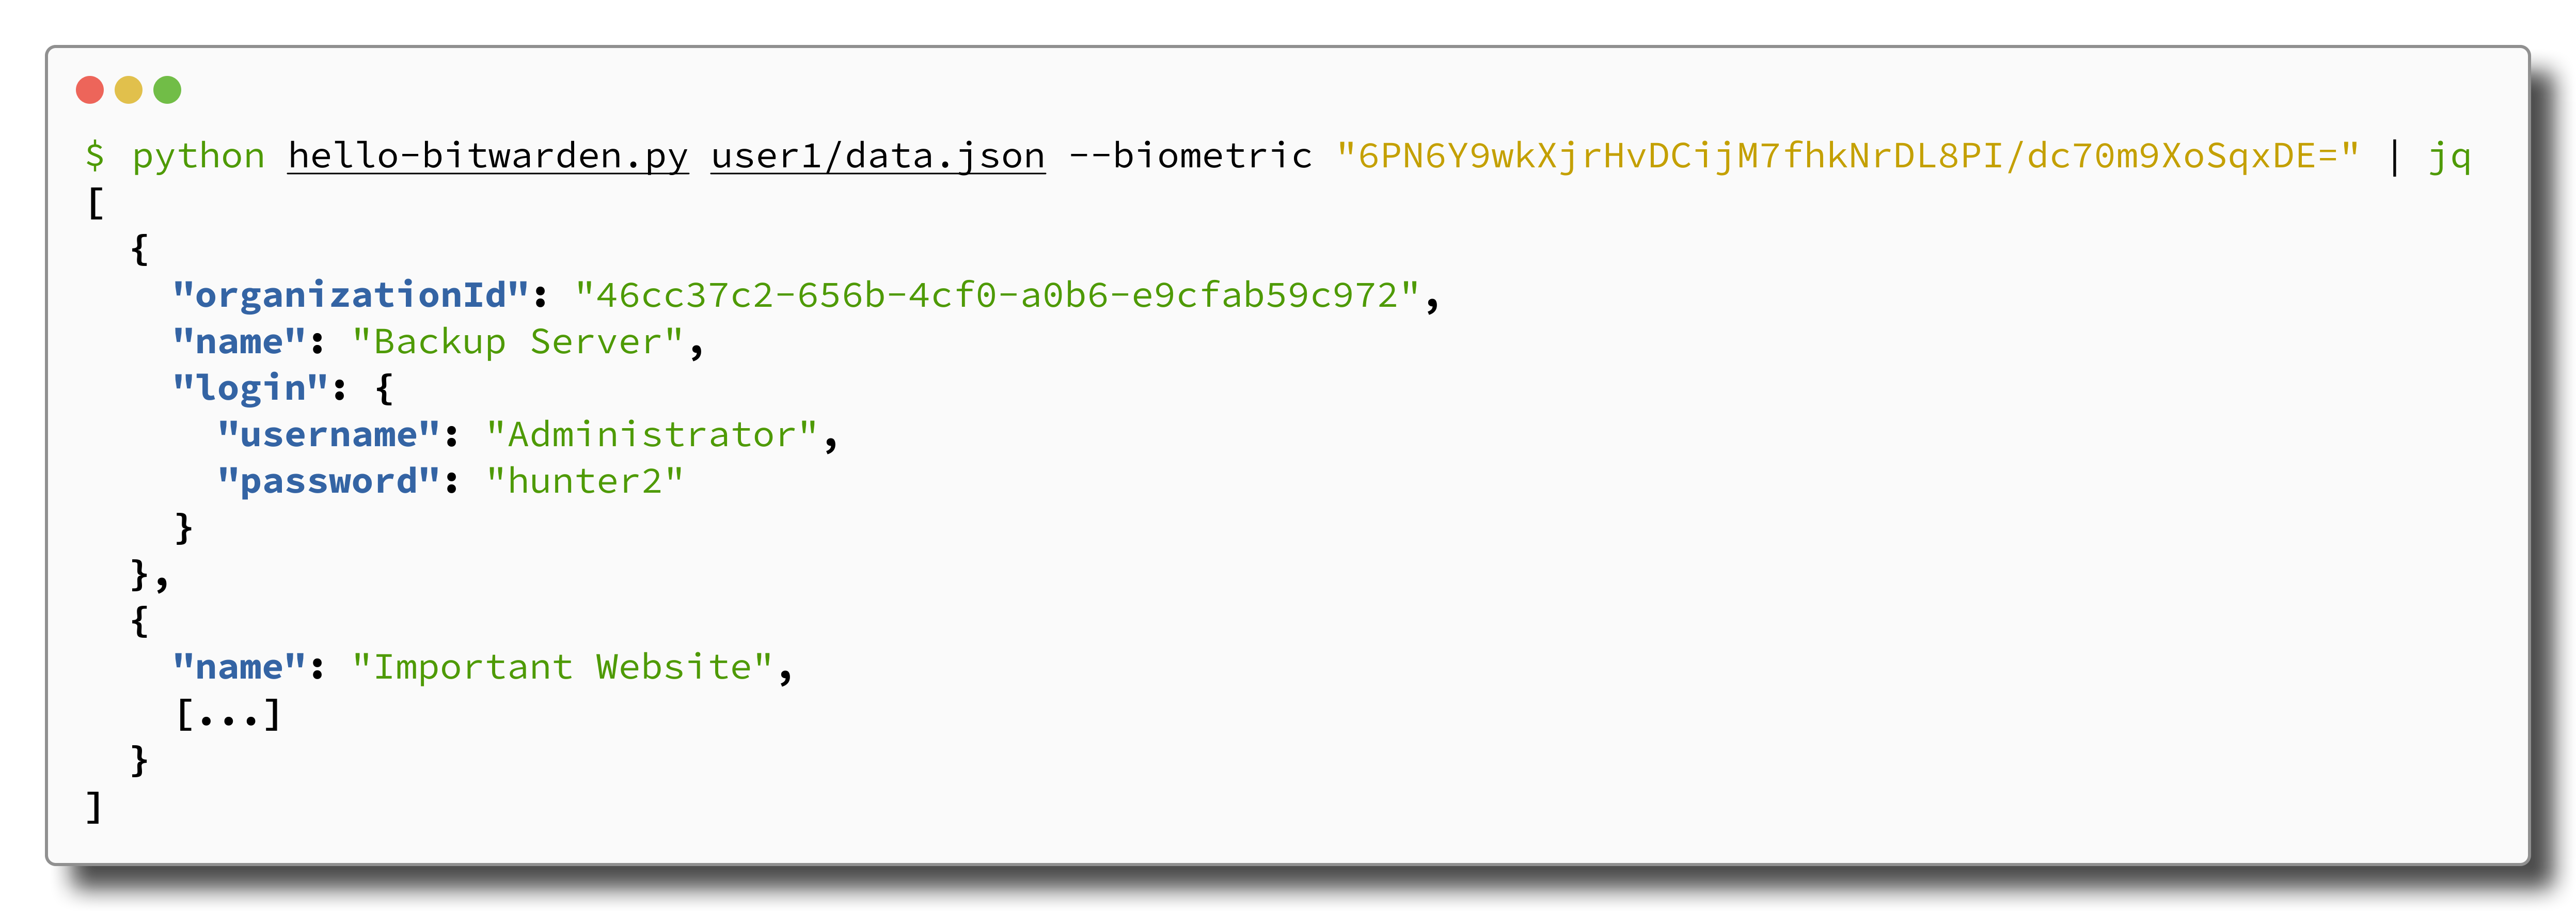 Terminal output of running python script to decrypt credentials.